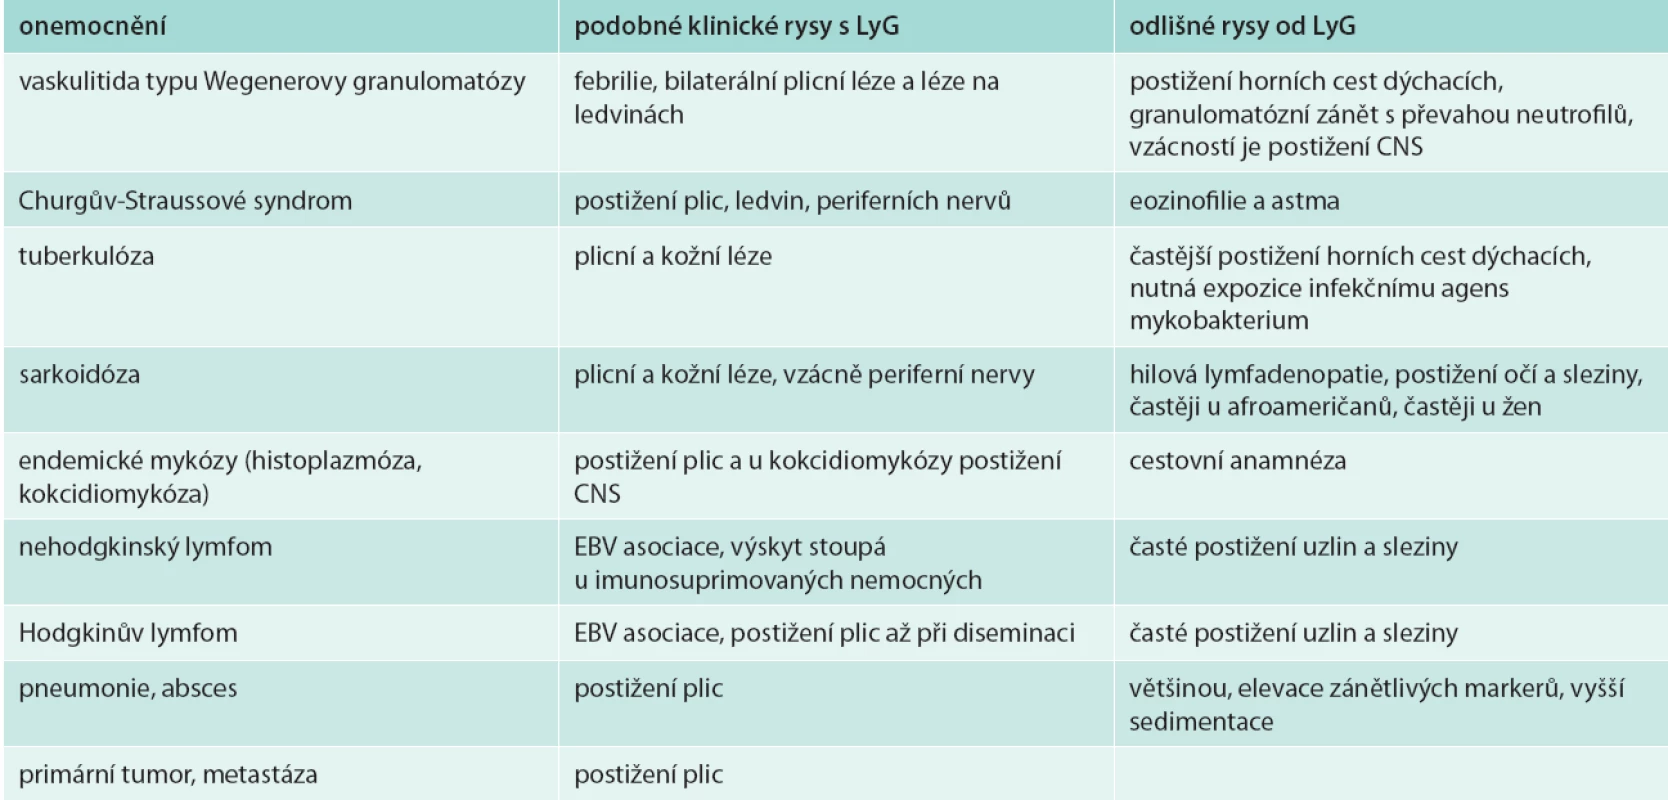 Diferenciální diagnostika lymfomatoidní granulomatózy z klinického pohledu [1,4–6,35]